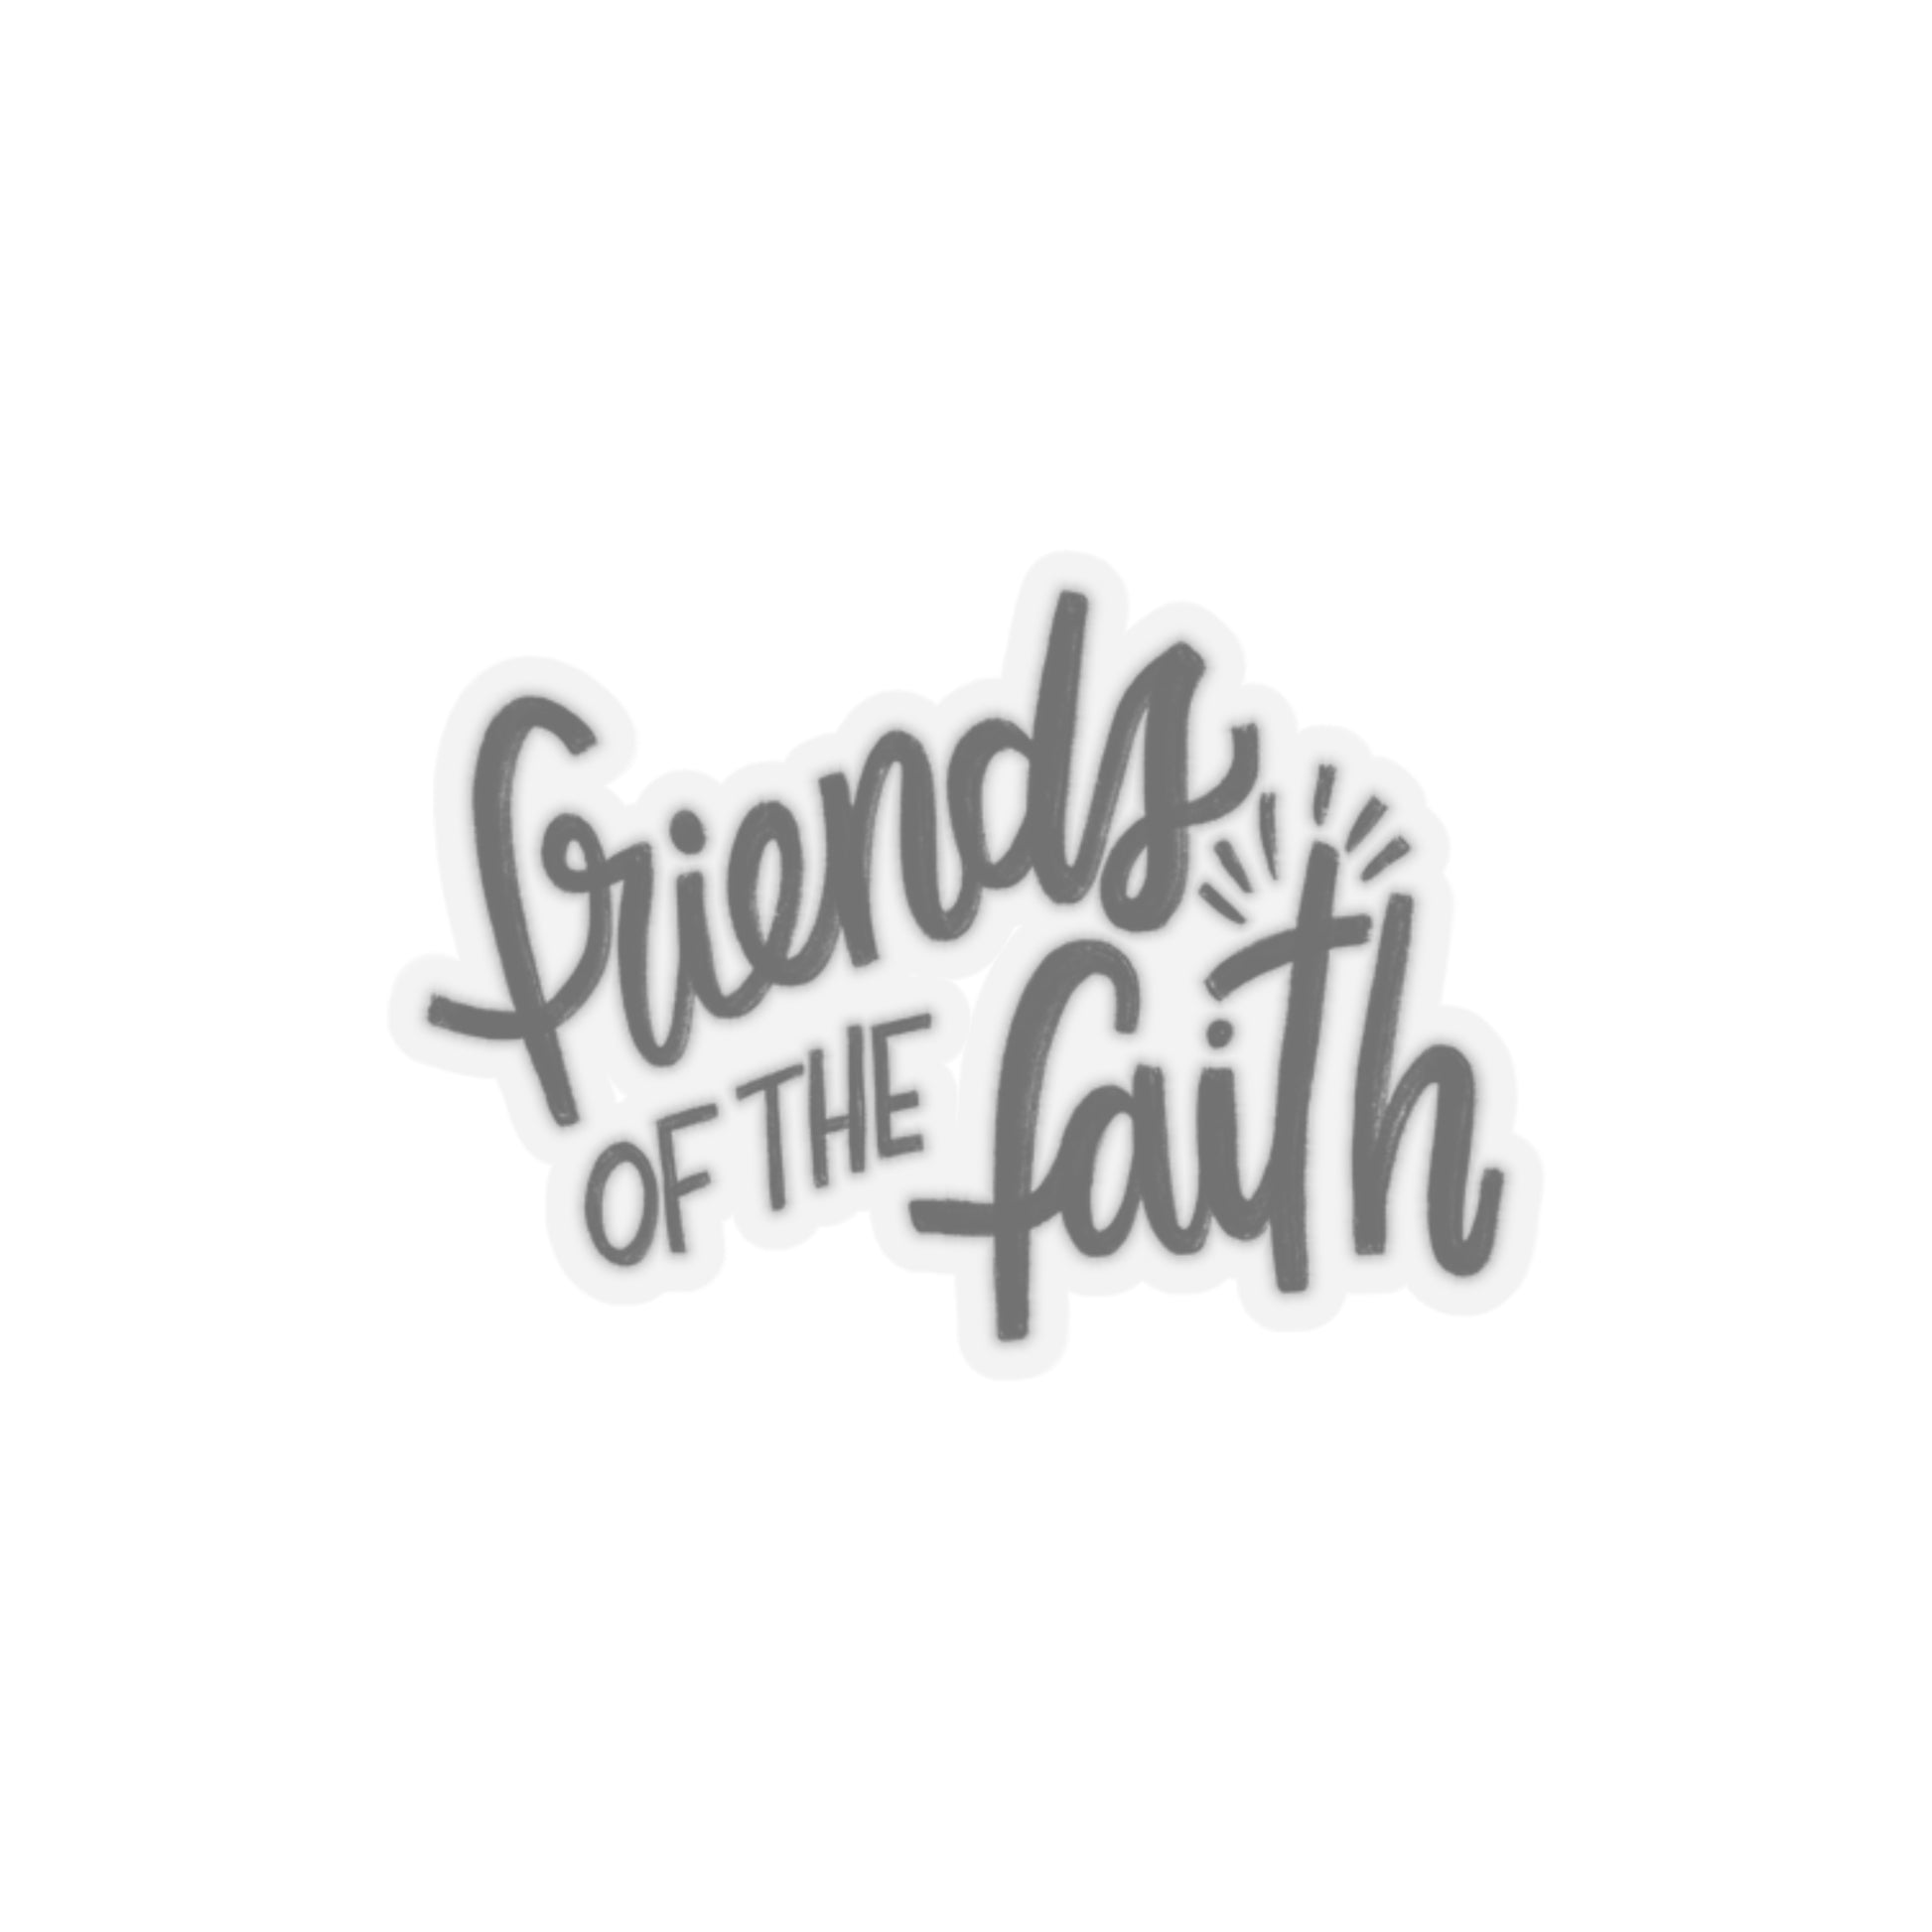 Friends of the Faith Logo Sticker - Friends of the Faith